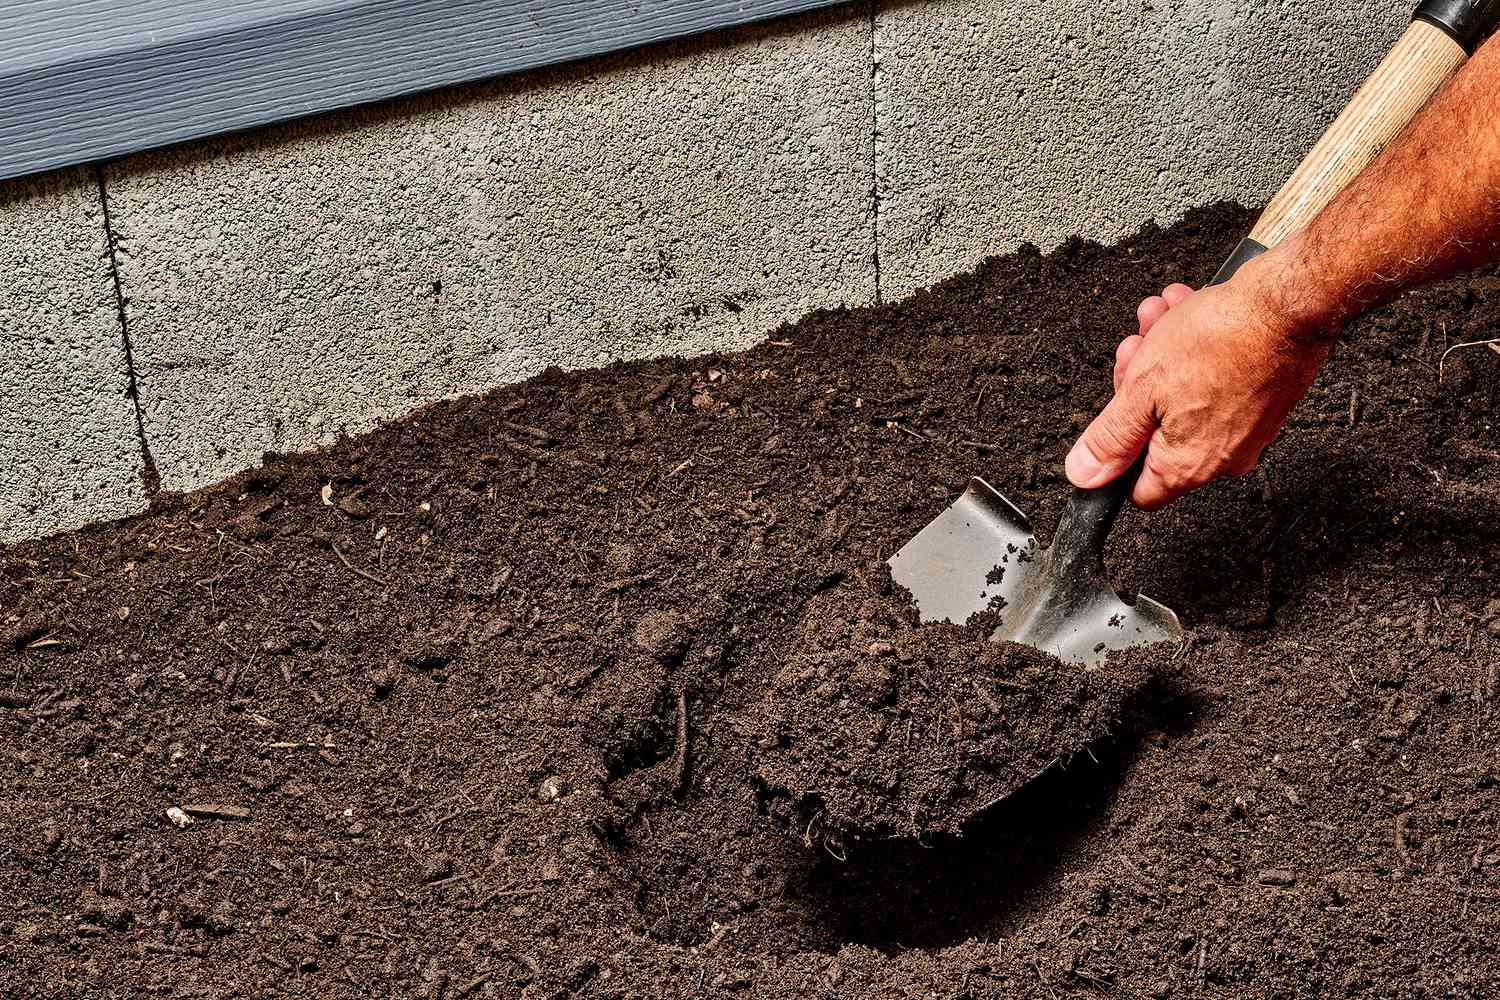 Schaufel gräbt Erde auf, um Bewässerungsrohre und Ventil freizulegen